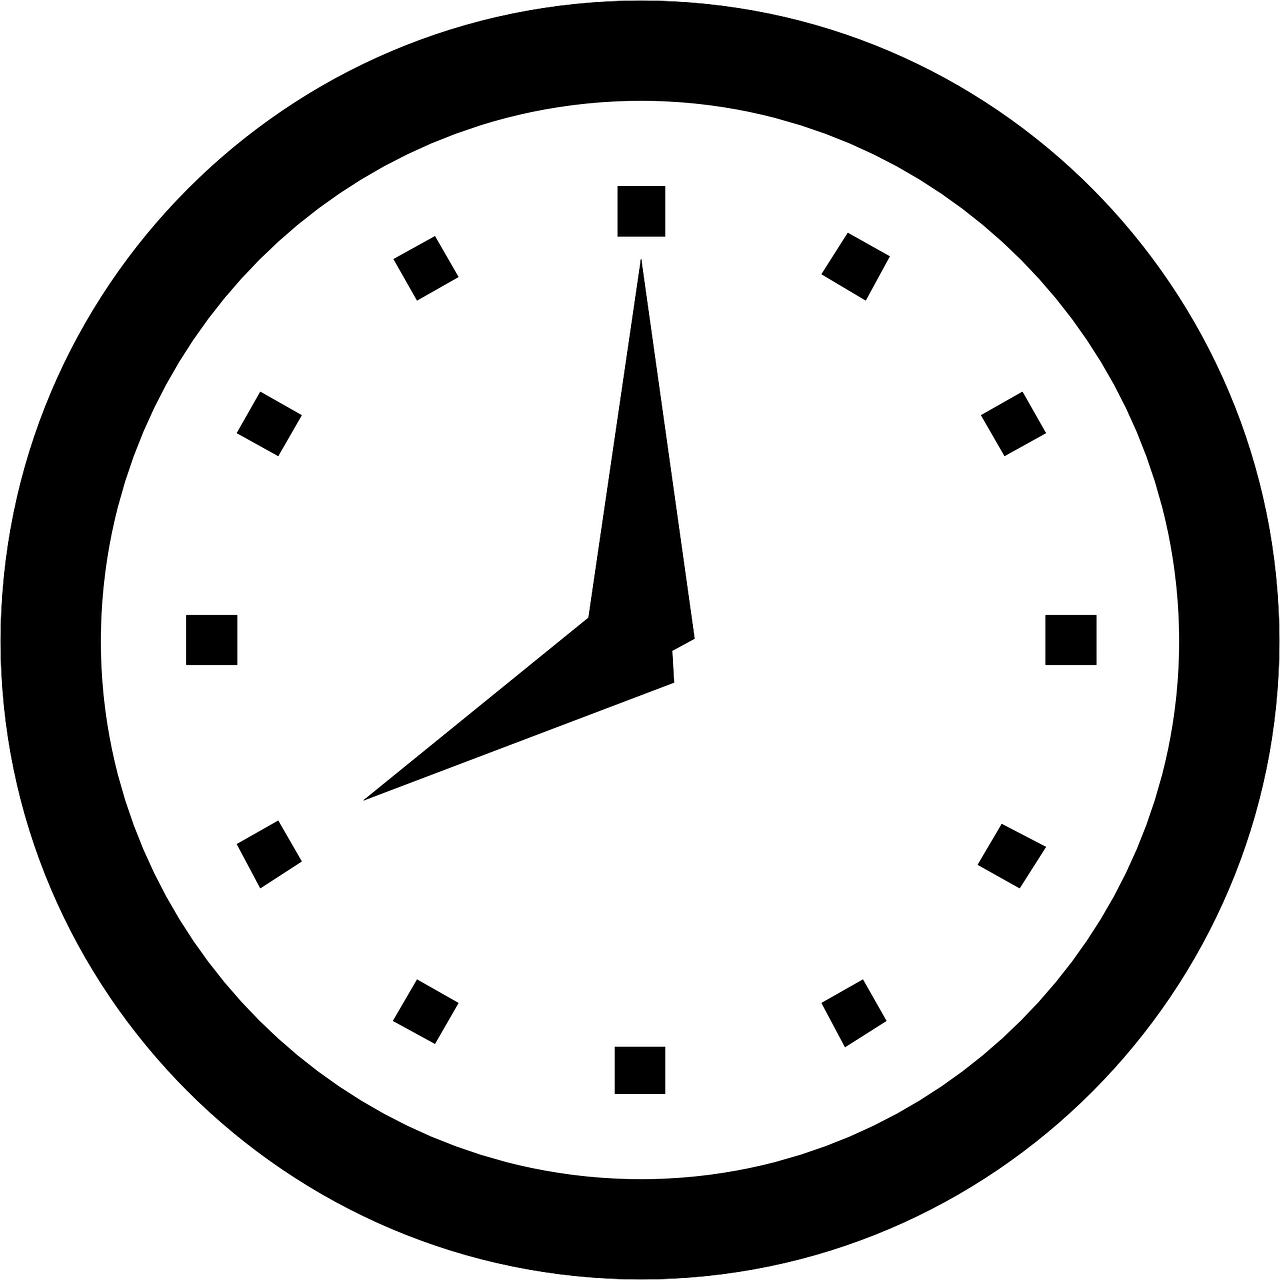 Laikrodis, Žiūrėti, Laikas, Valandą, Minutė, Koncepcija, Signalizacija, Antra, Terminas, Chronometras